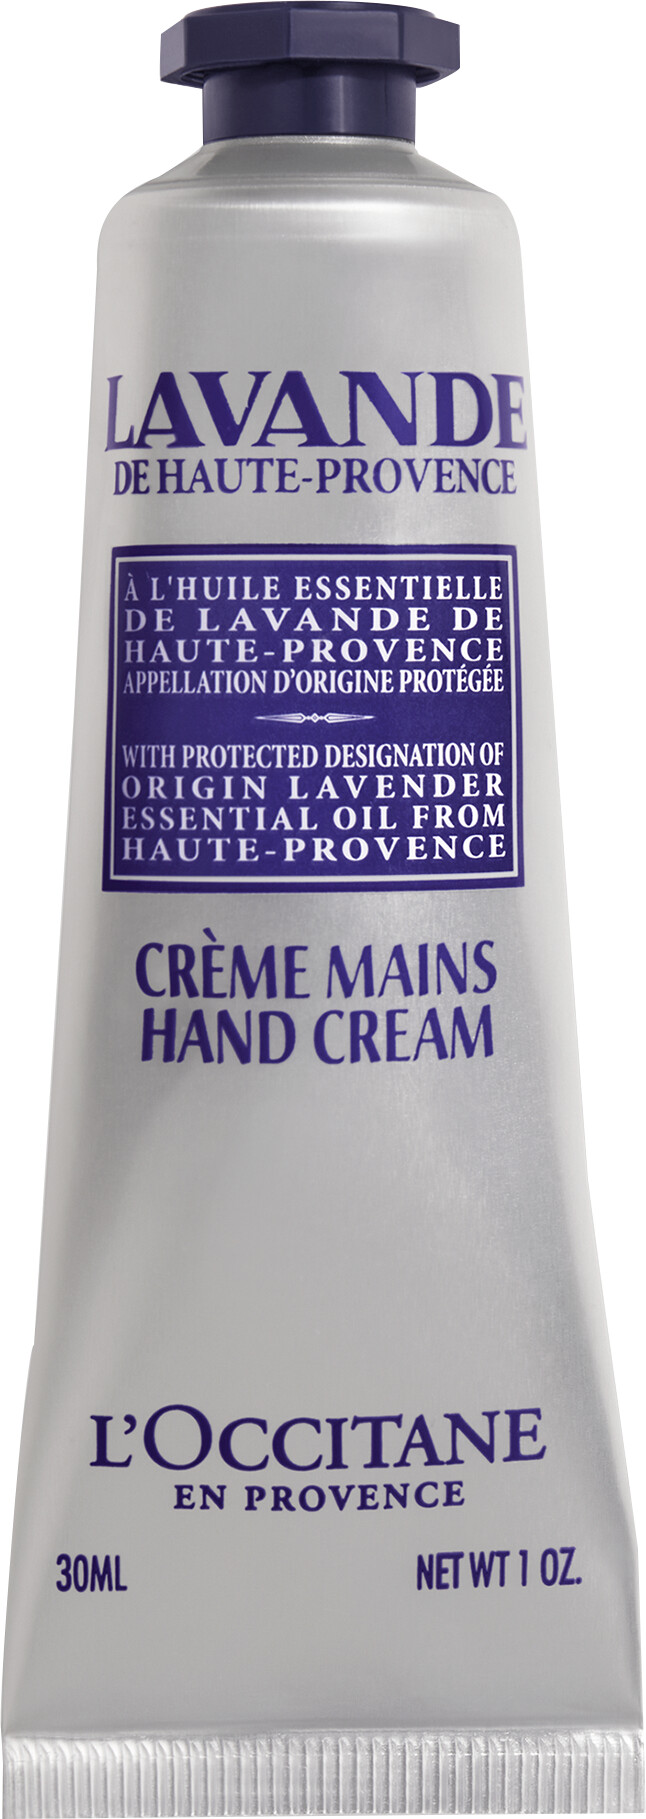 L'Occitane Lavande Hand Cream 30ml